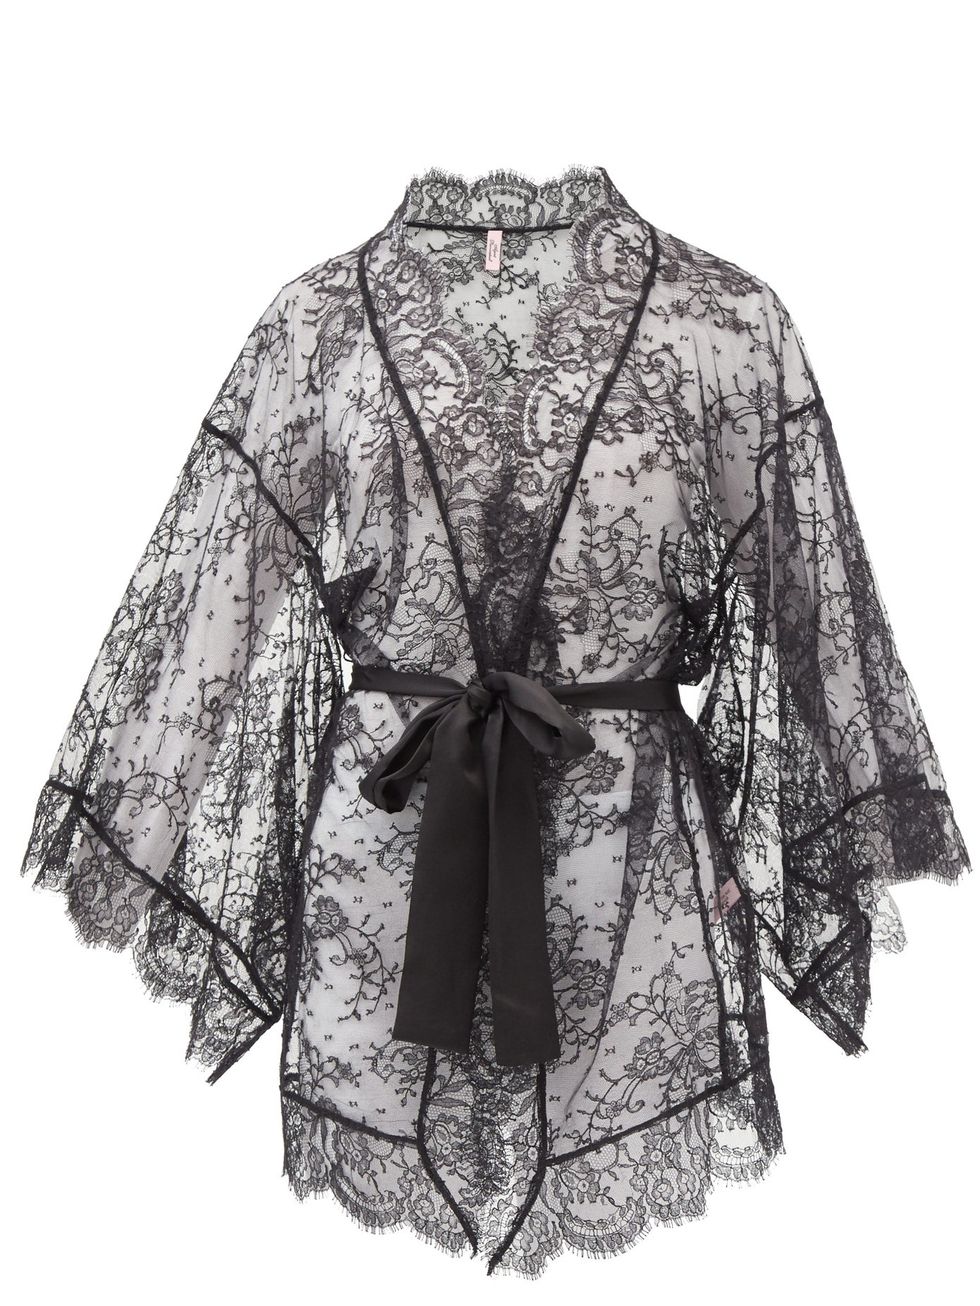 vestaglia donna, vestaglia da notte, vestaglia kimono donna